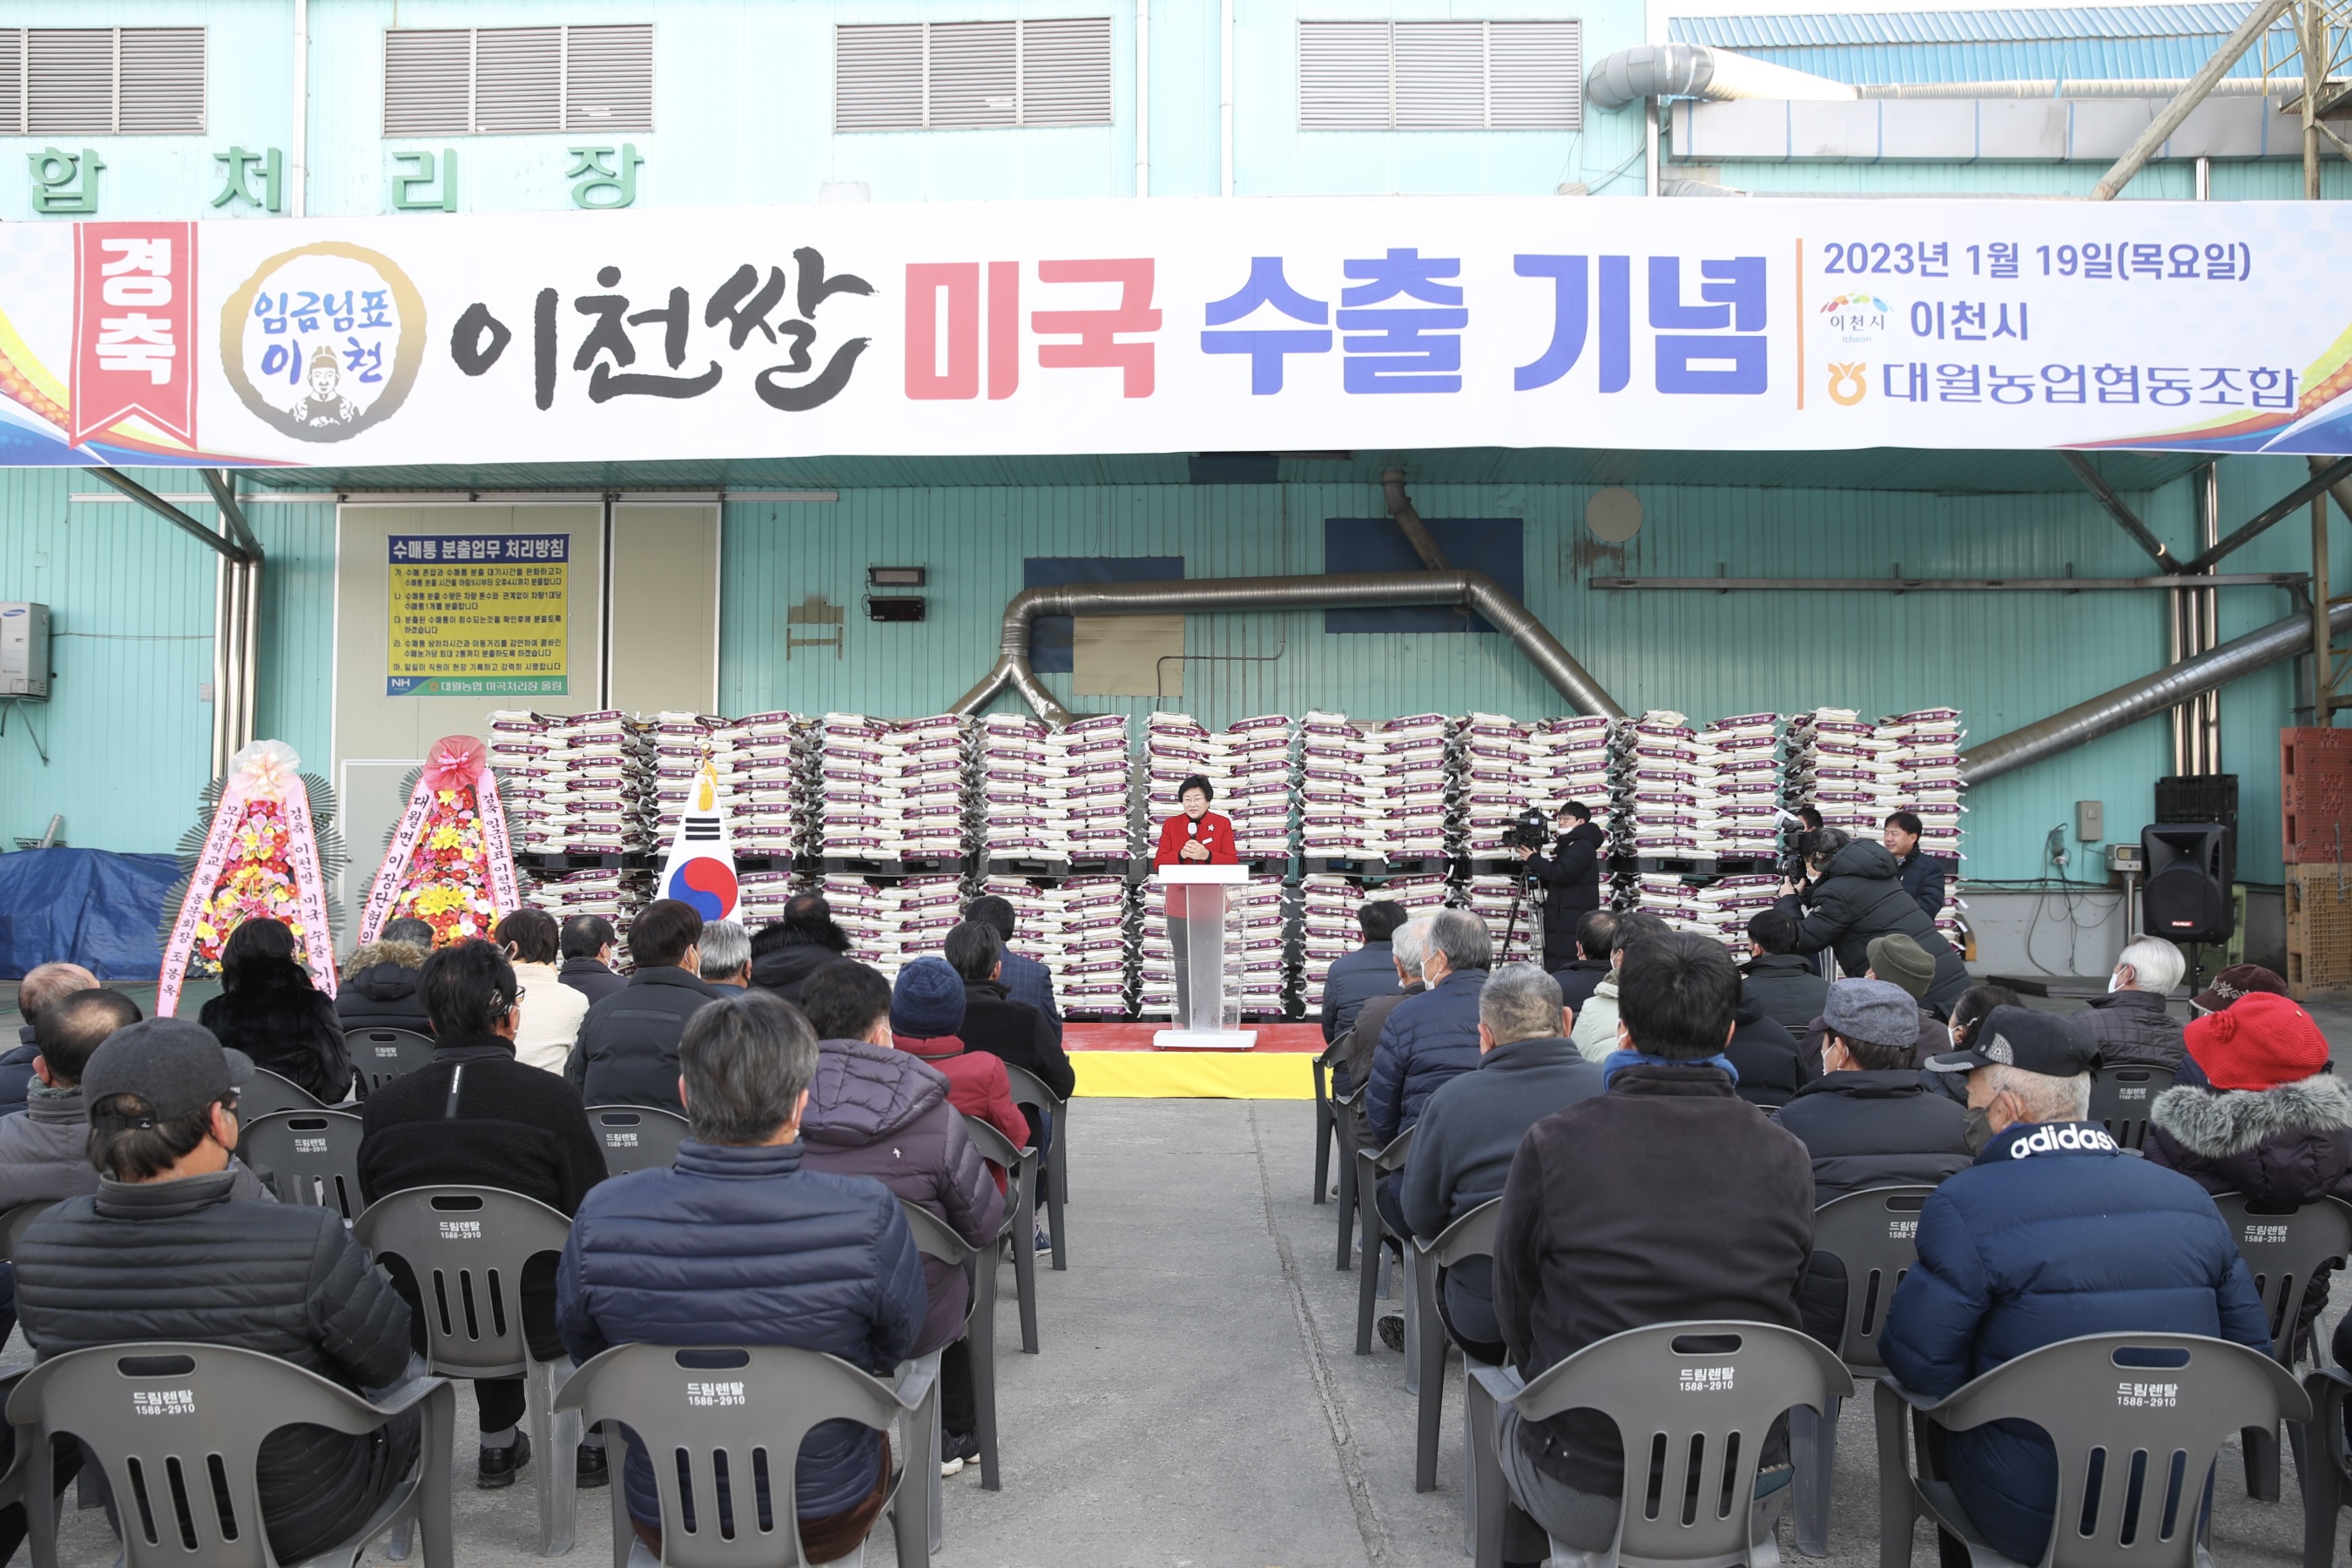 19일 이천 대월농협 RPC에서 열린 이천쌀 미국 수출 기념식에서 김경희 시장이 인사말을 하고 있다. 이천시 제공